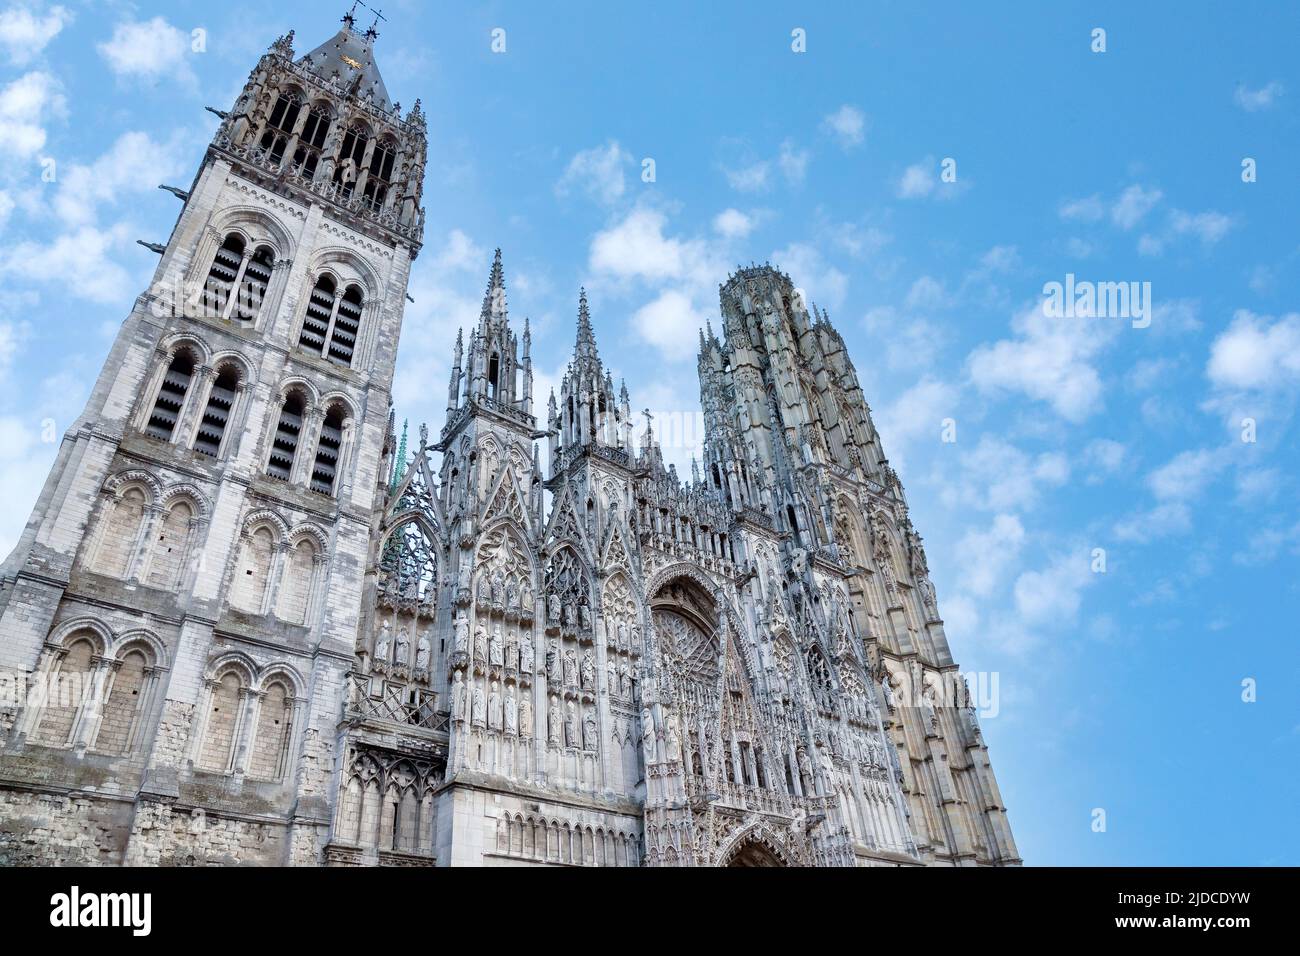 Cathédrale Notre-Dame de Rouen, France Stock Photo